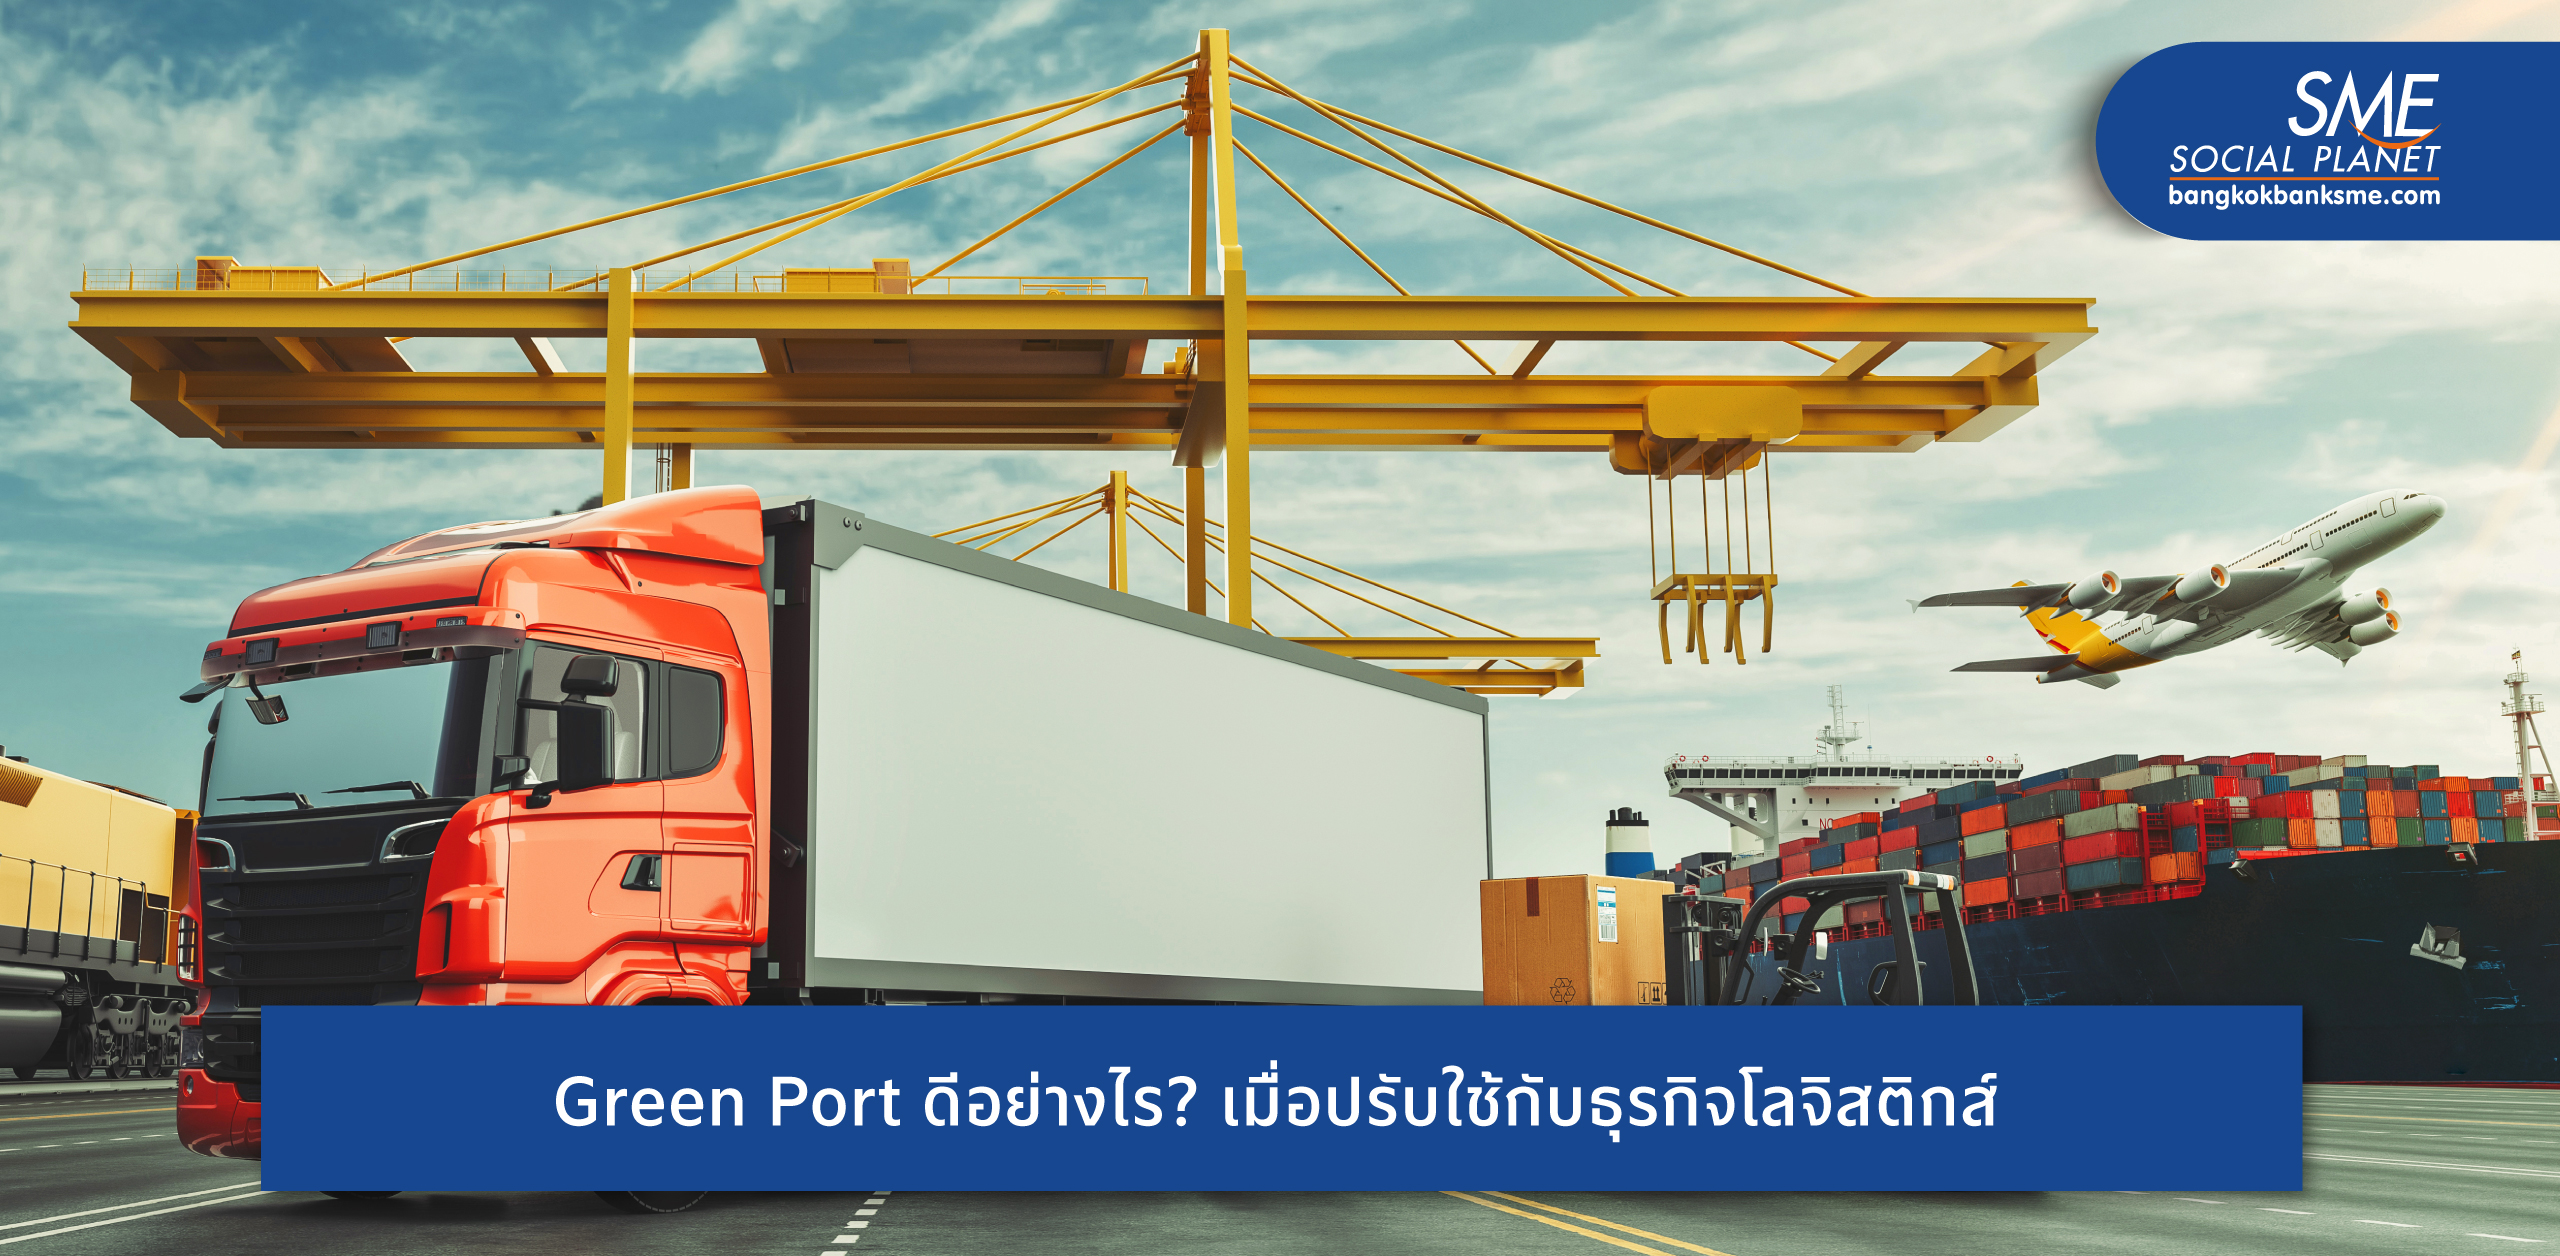 ชวนรู้จักเทคโนโลยีขับเคลื่อนนโยบาย Green Port ท่าเรือจีน โลจิสติกส์ไทยปรับใช้ได้ประโยชน์